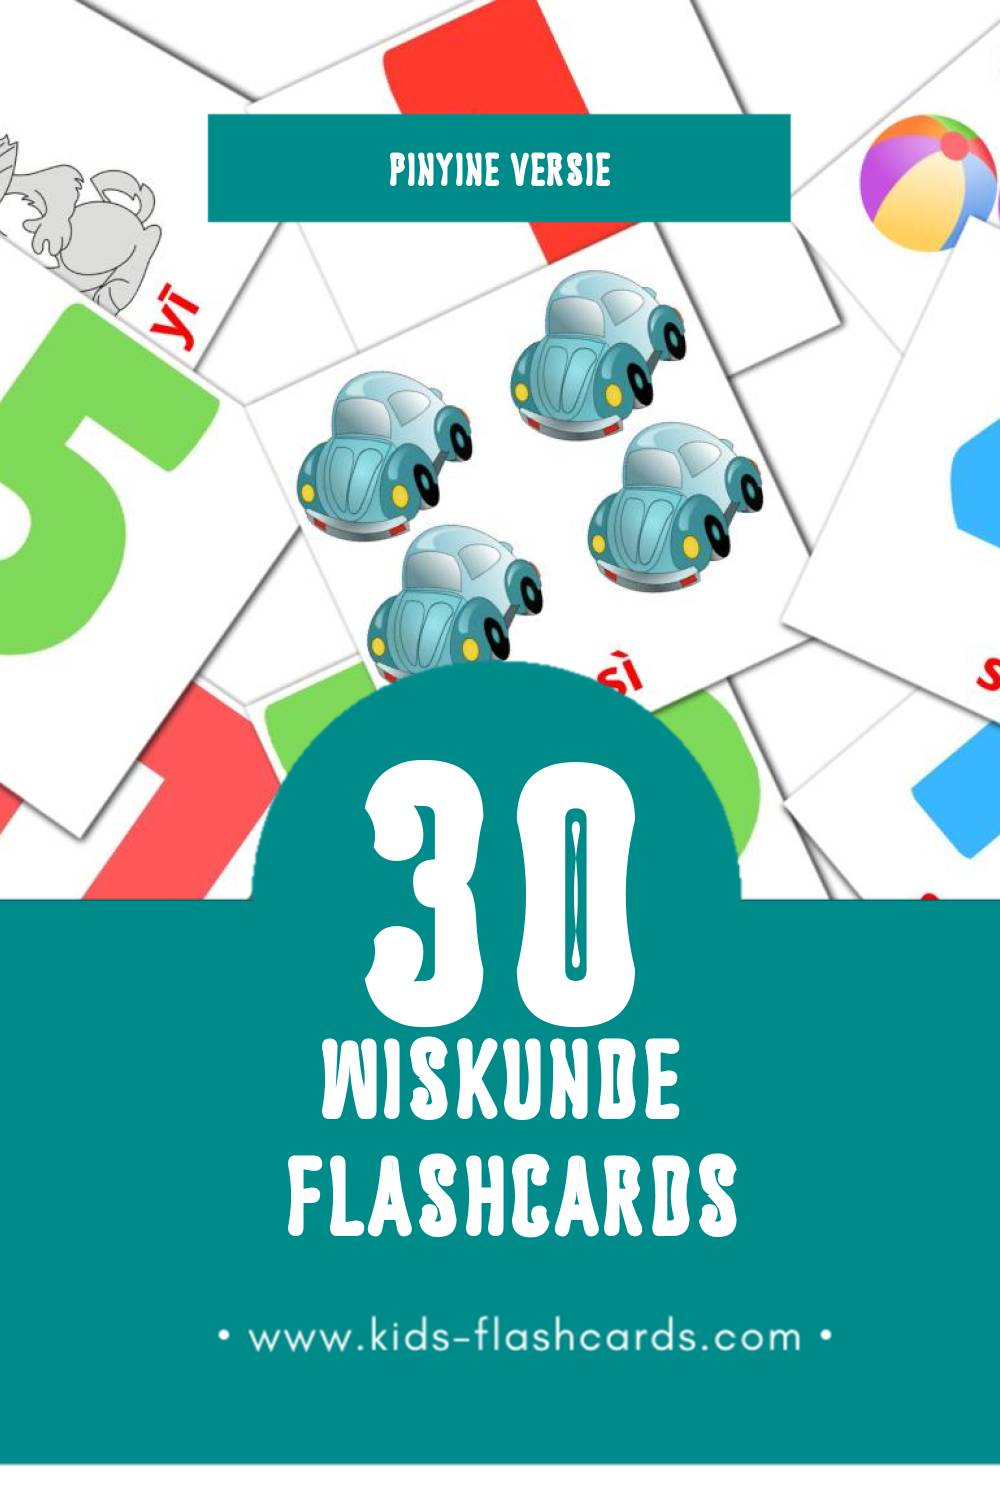 Visuele Shùxué Flashcards voor Kleuters (30 kaarten in het Pinyin)